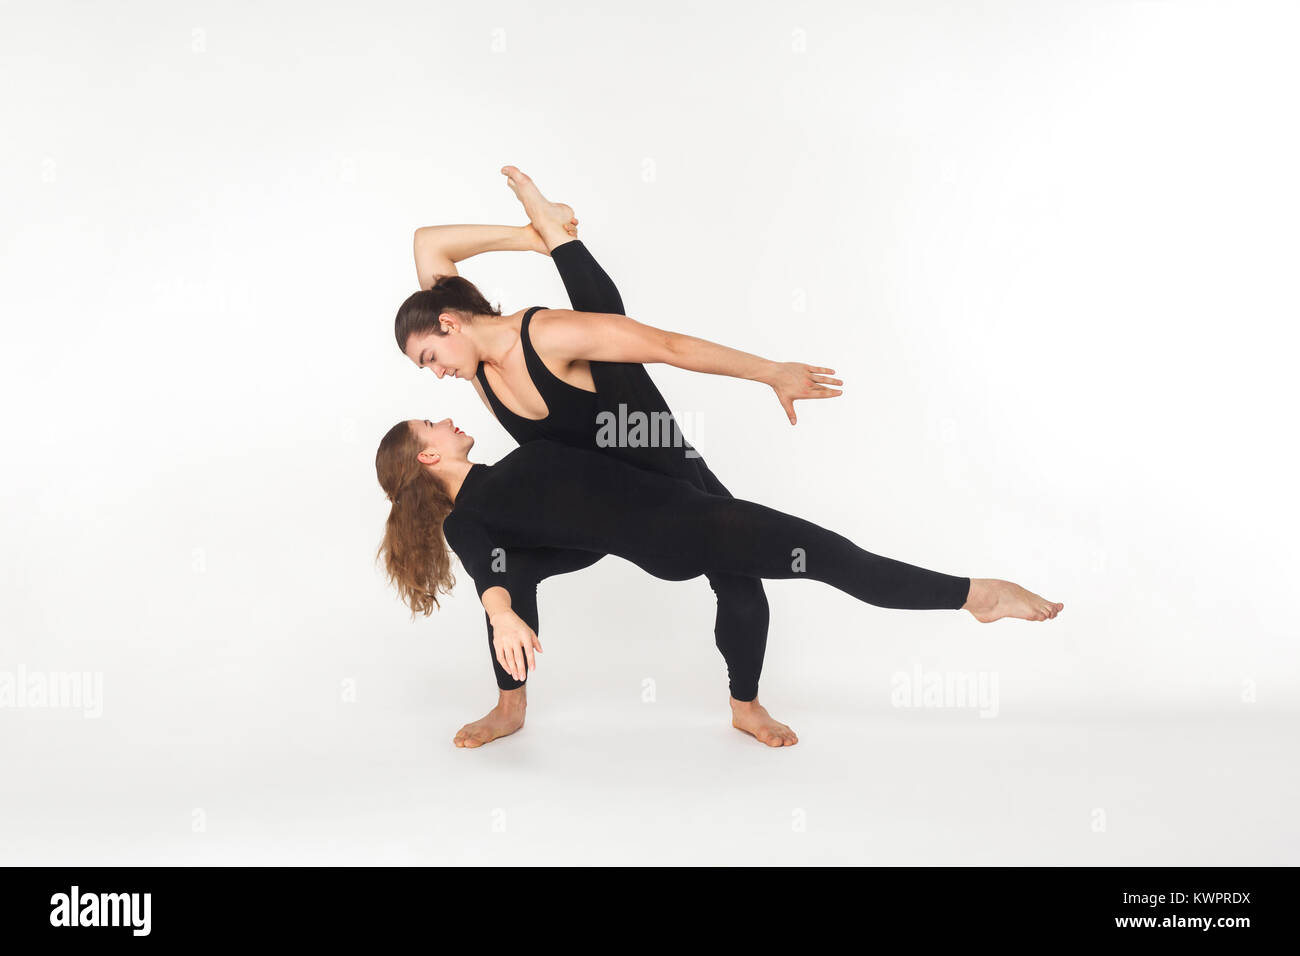 Flexibilidad dos amigos bailar, hacer el rendimiento. Foto de estudio, aislado sobre fondo blanco. Foto de stock